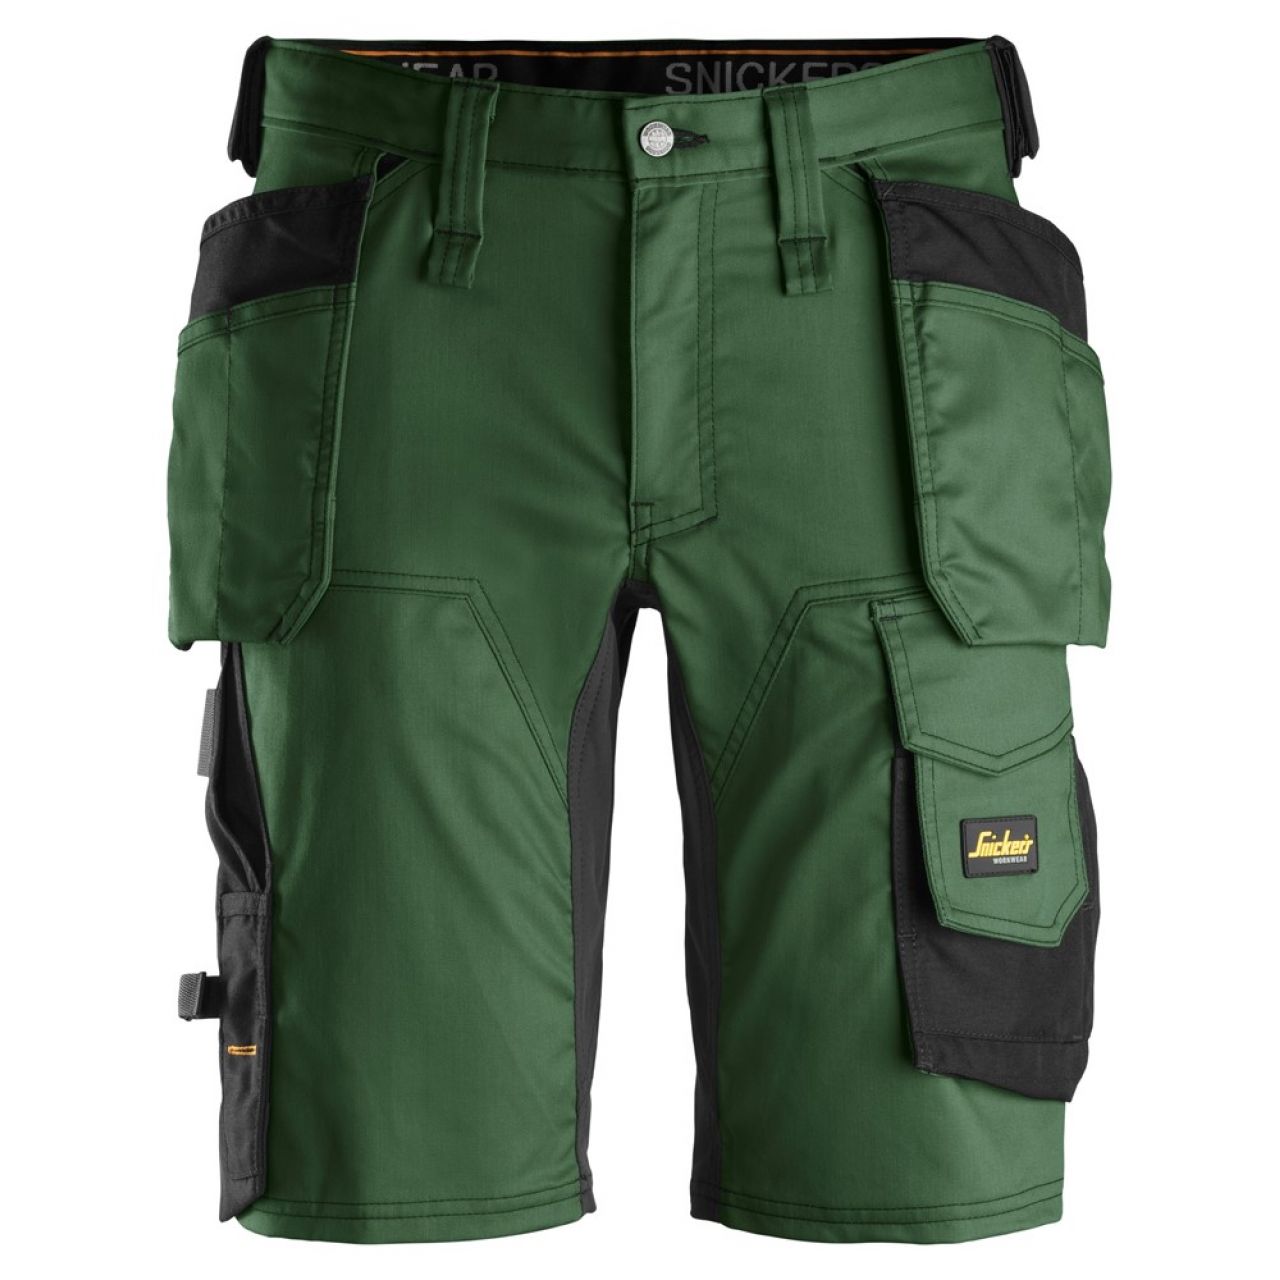 6141 Pantalones cortos de trabajo elásticos con bolsillos flotantes AllroundWork verde forestal-negro talla 58